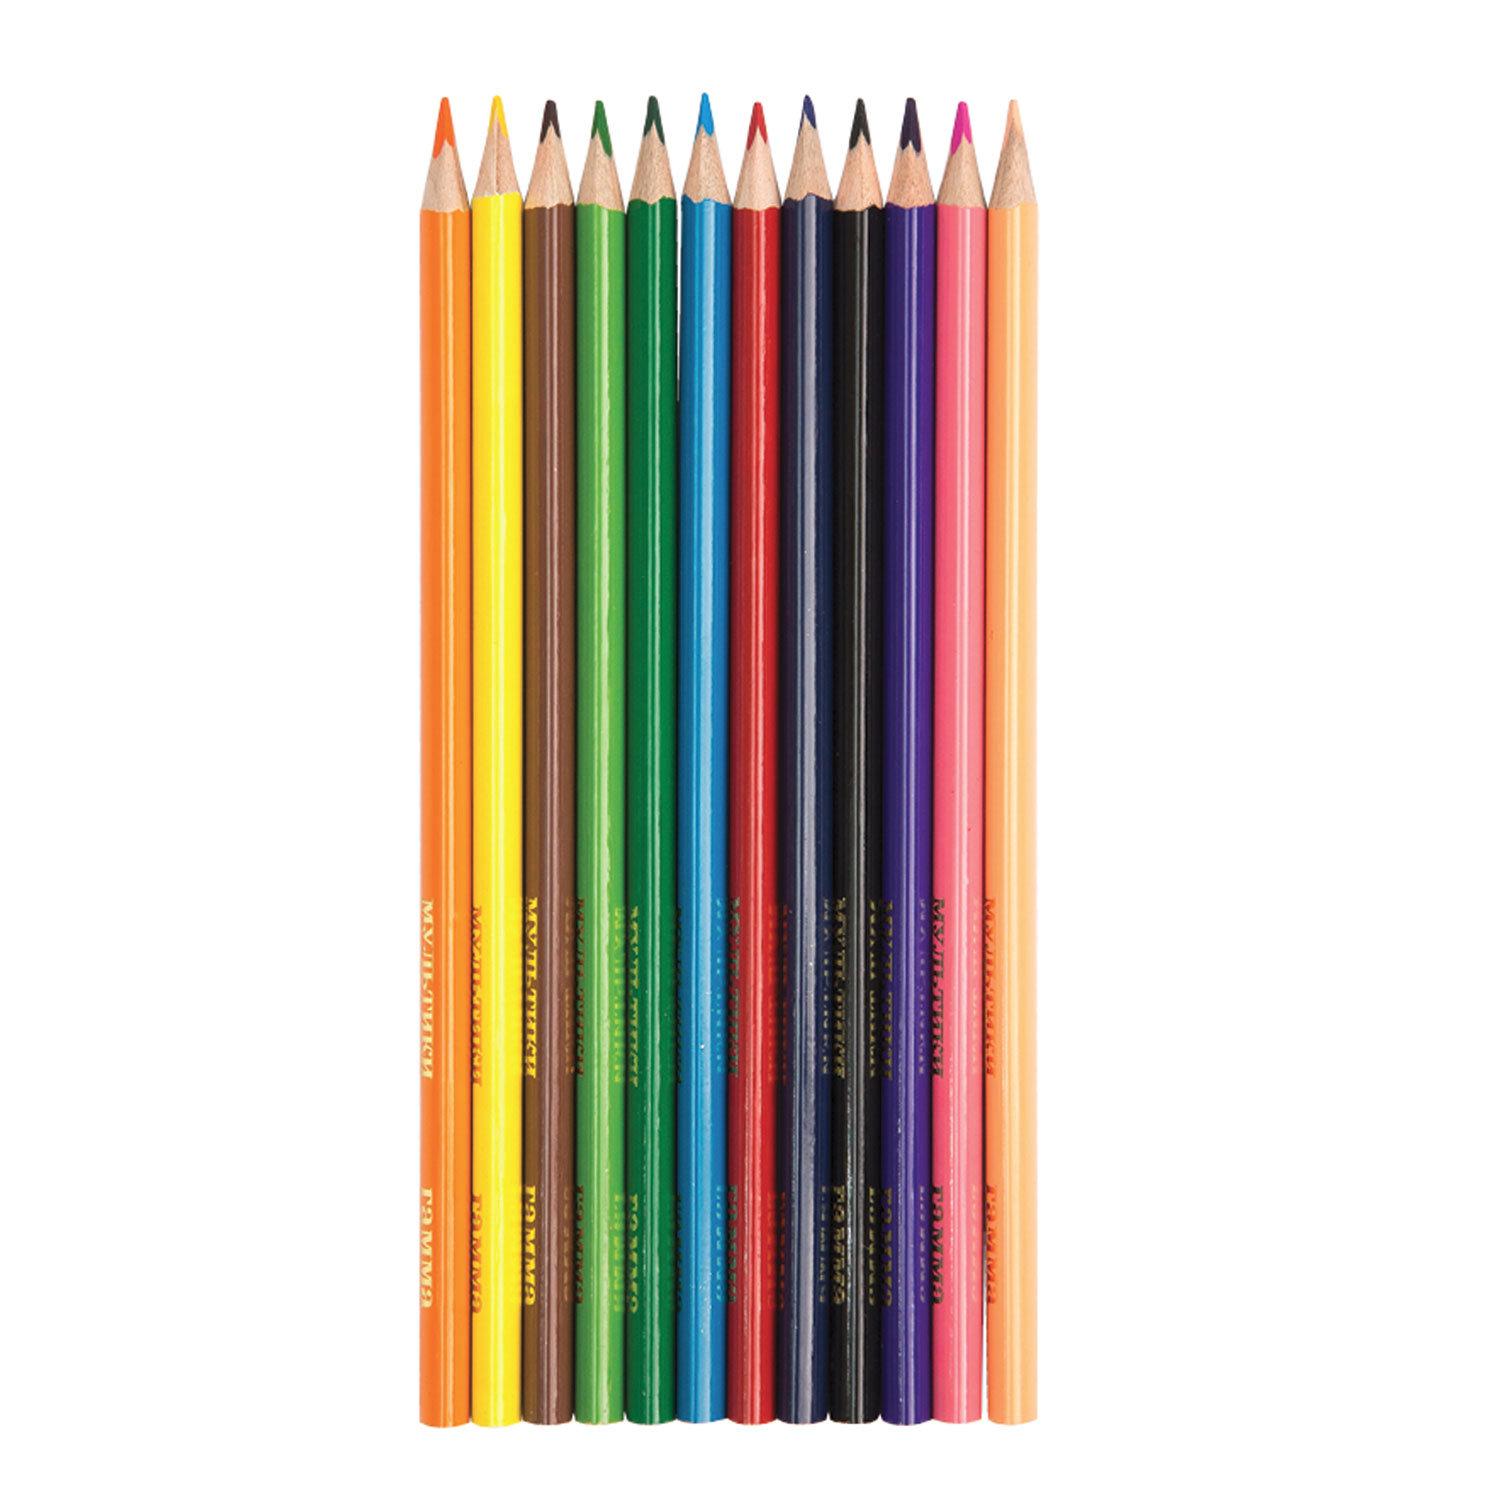 Цветные карандаши 6. Карандаш цветной (12 шт) sg010002. Цветные карандаши гамма 6цв.